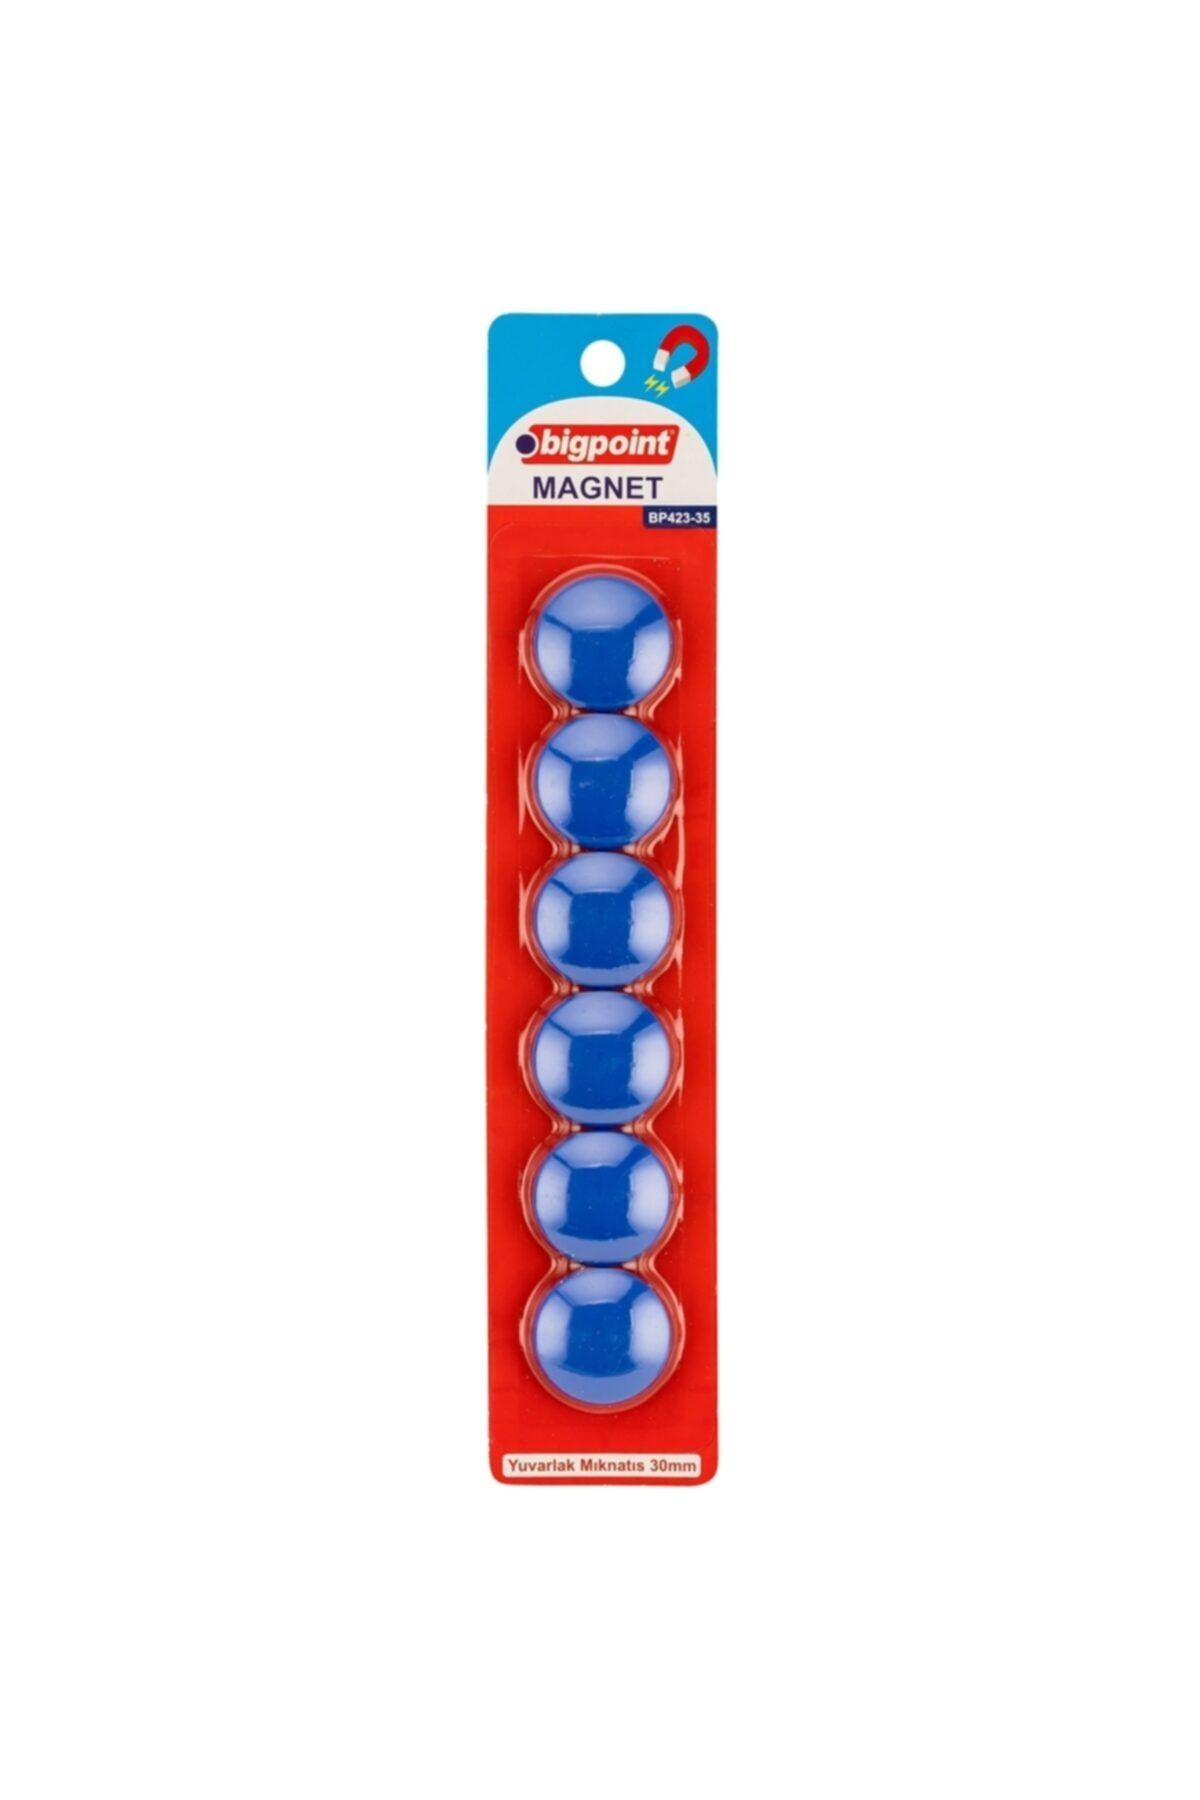 Bigpoint Magnet 30mm (mıknatıs) Mavi 6'lı Blister 12'li Kutu